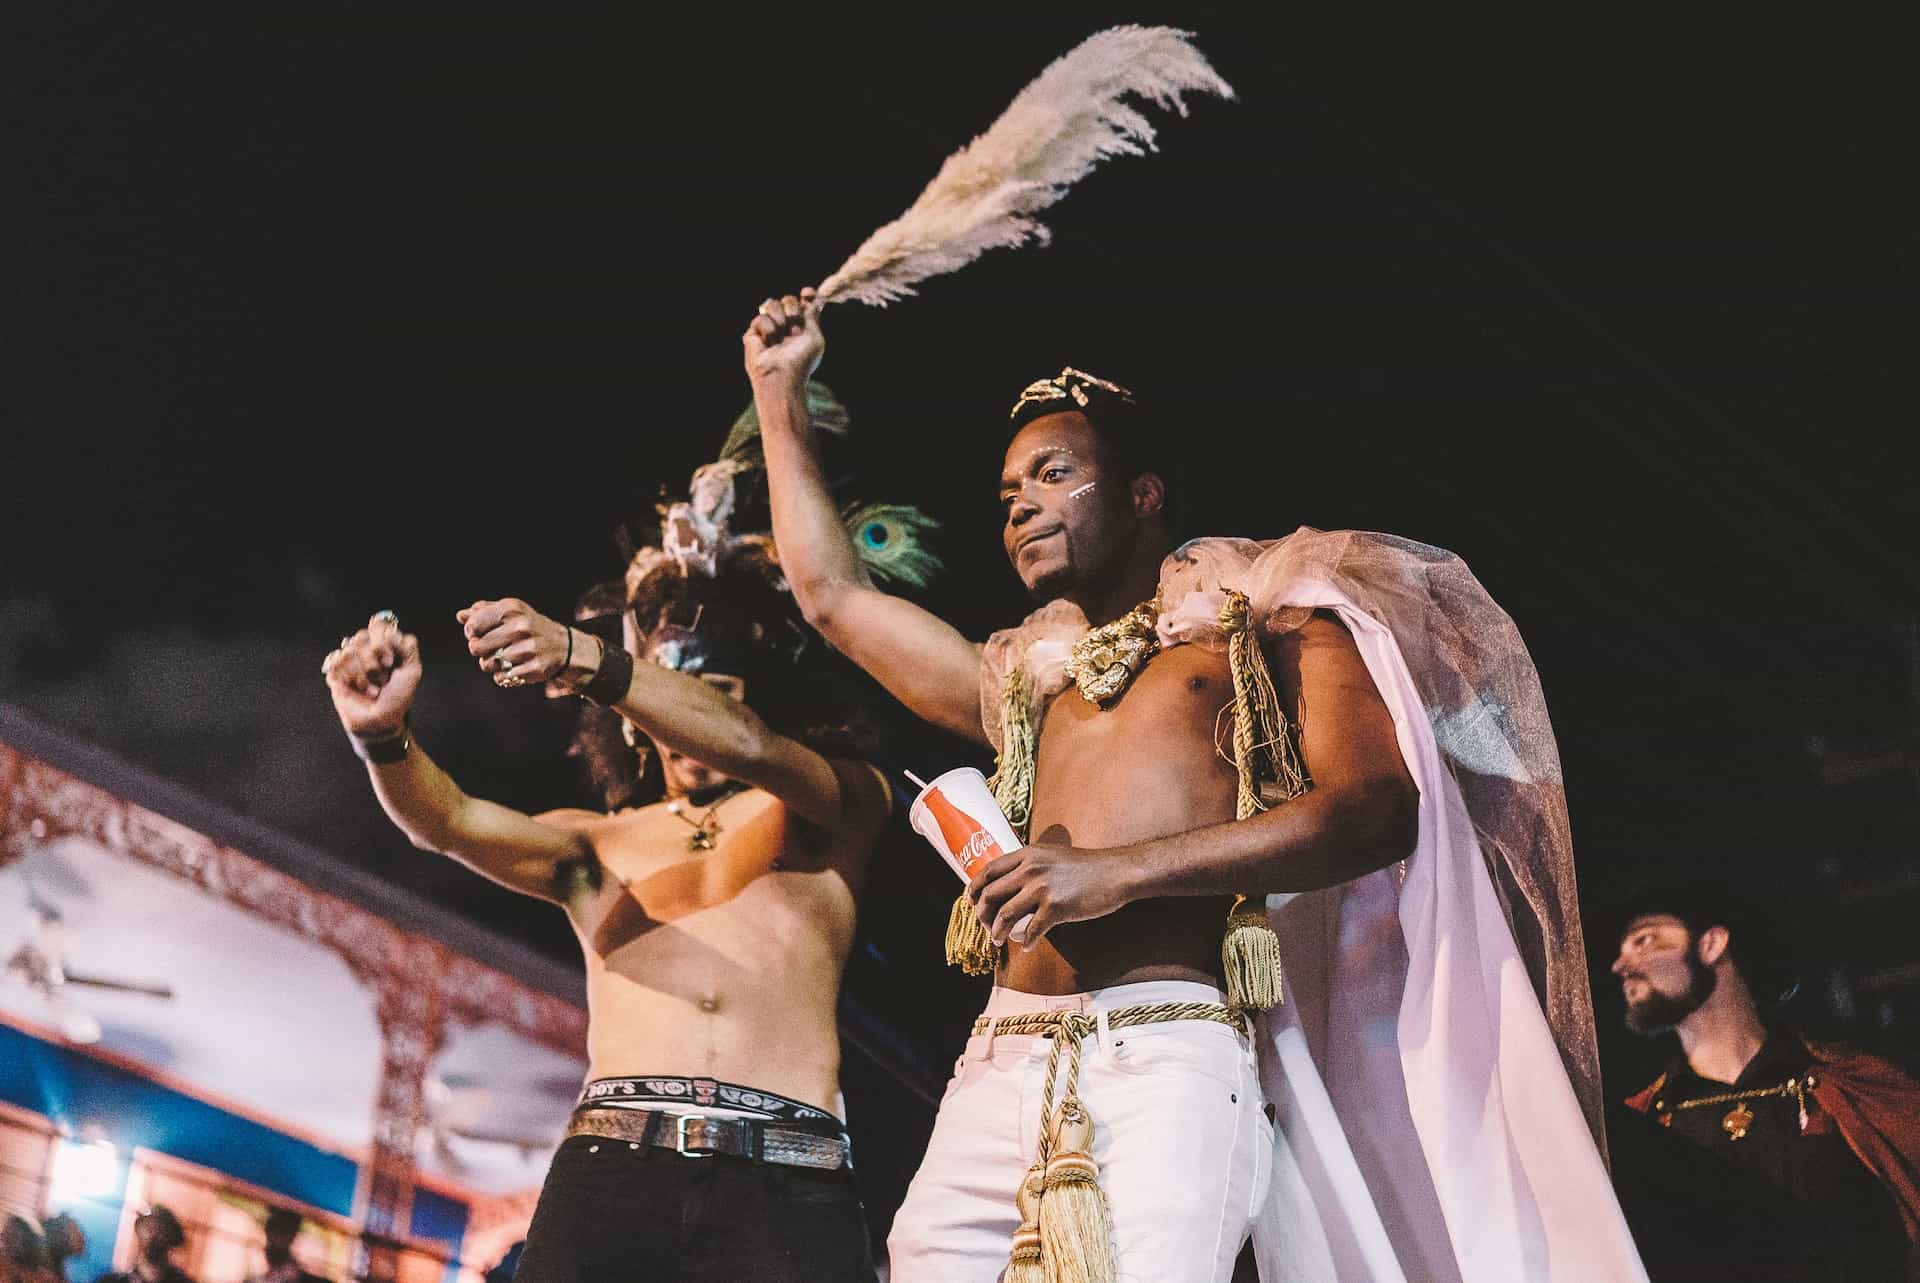 Dua pria tampil topless dalam riasan di perayaan karnaval.